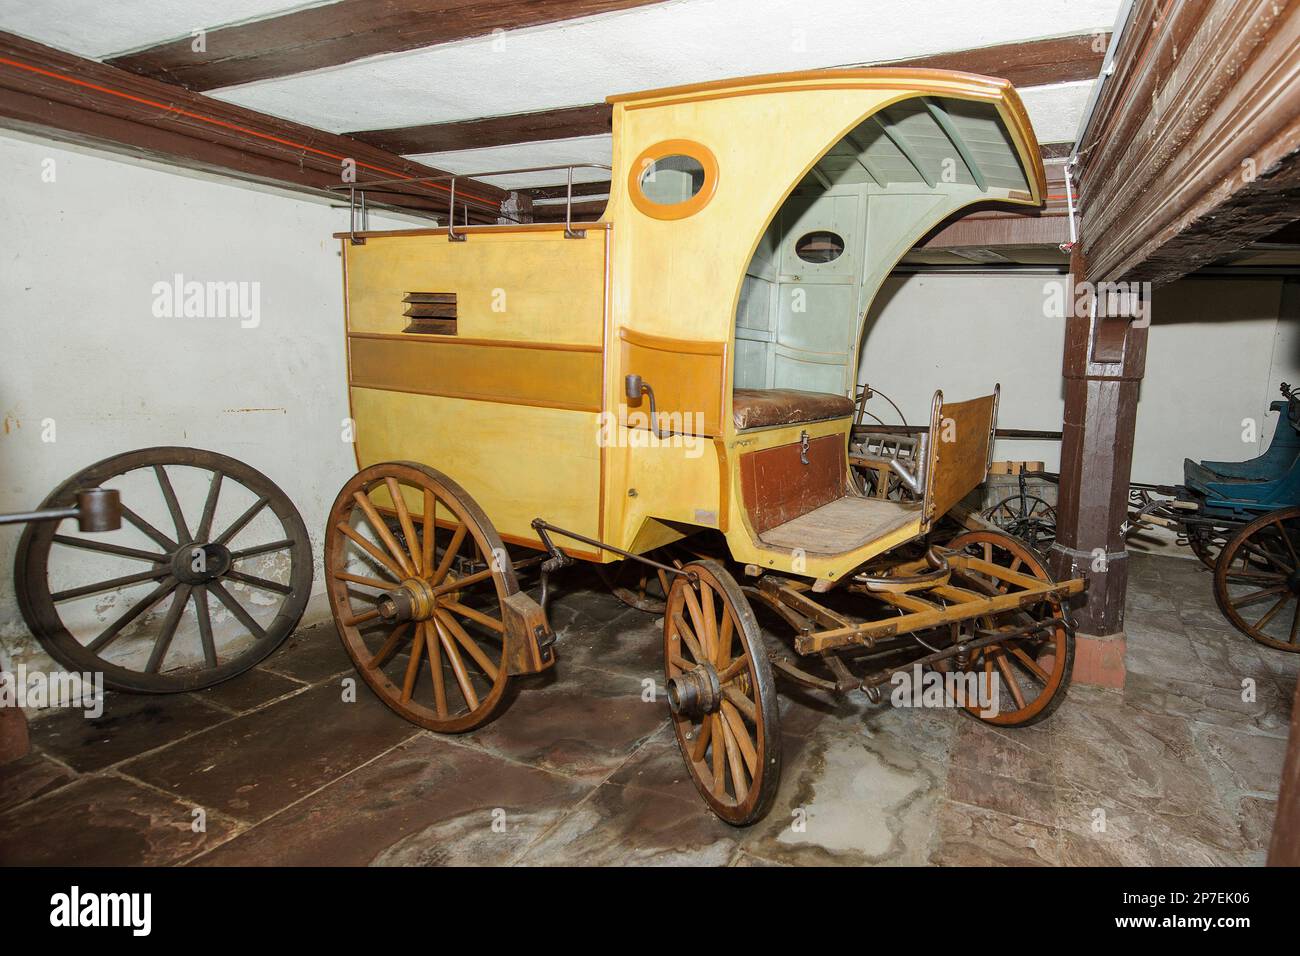 Kutsche mit zwei Achsen mit Vordach in ehemaliger Geräteschuppen von Museum Grimm-Haus, Steinau an der Straße, Hessen, Deutschland, Europa Banque D'Images